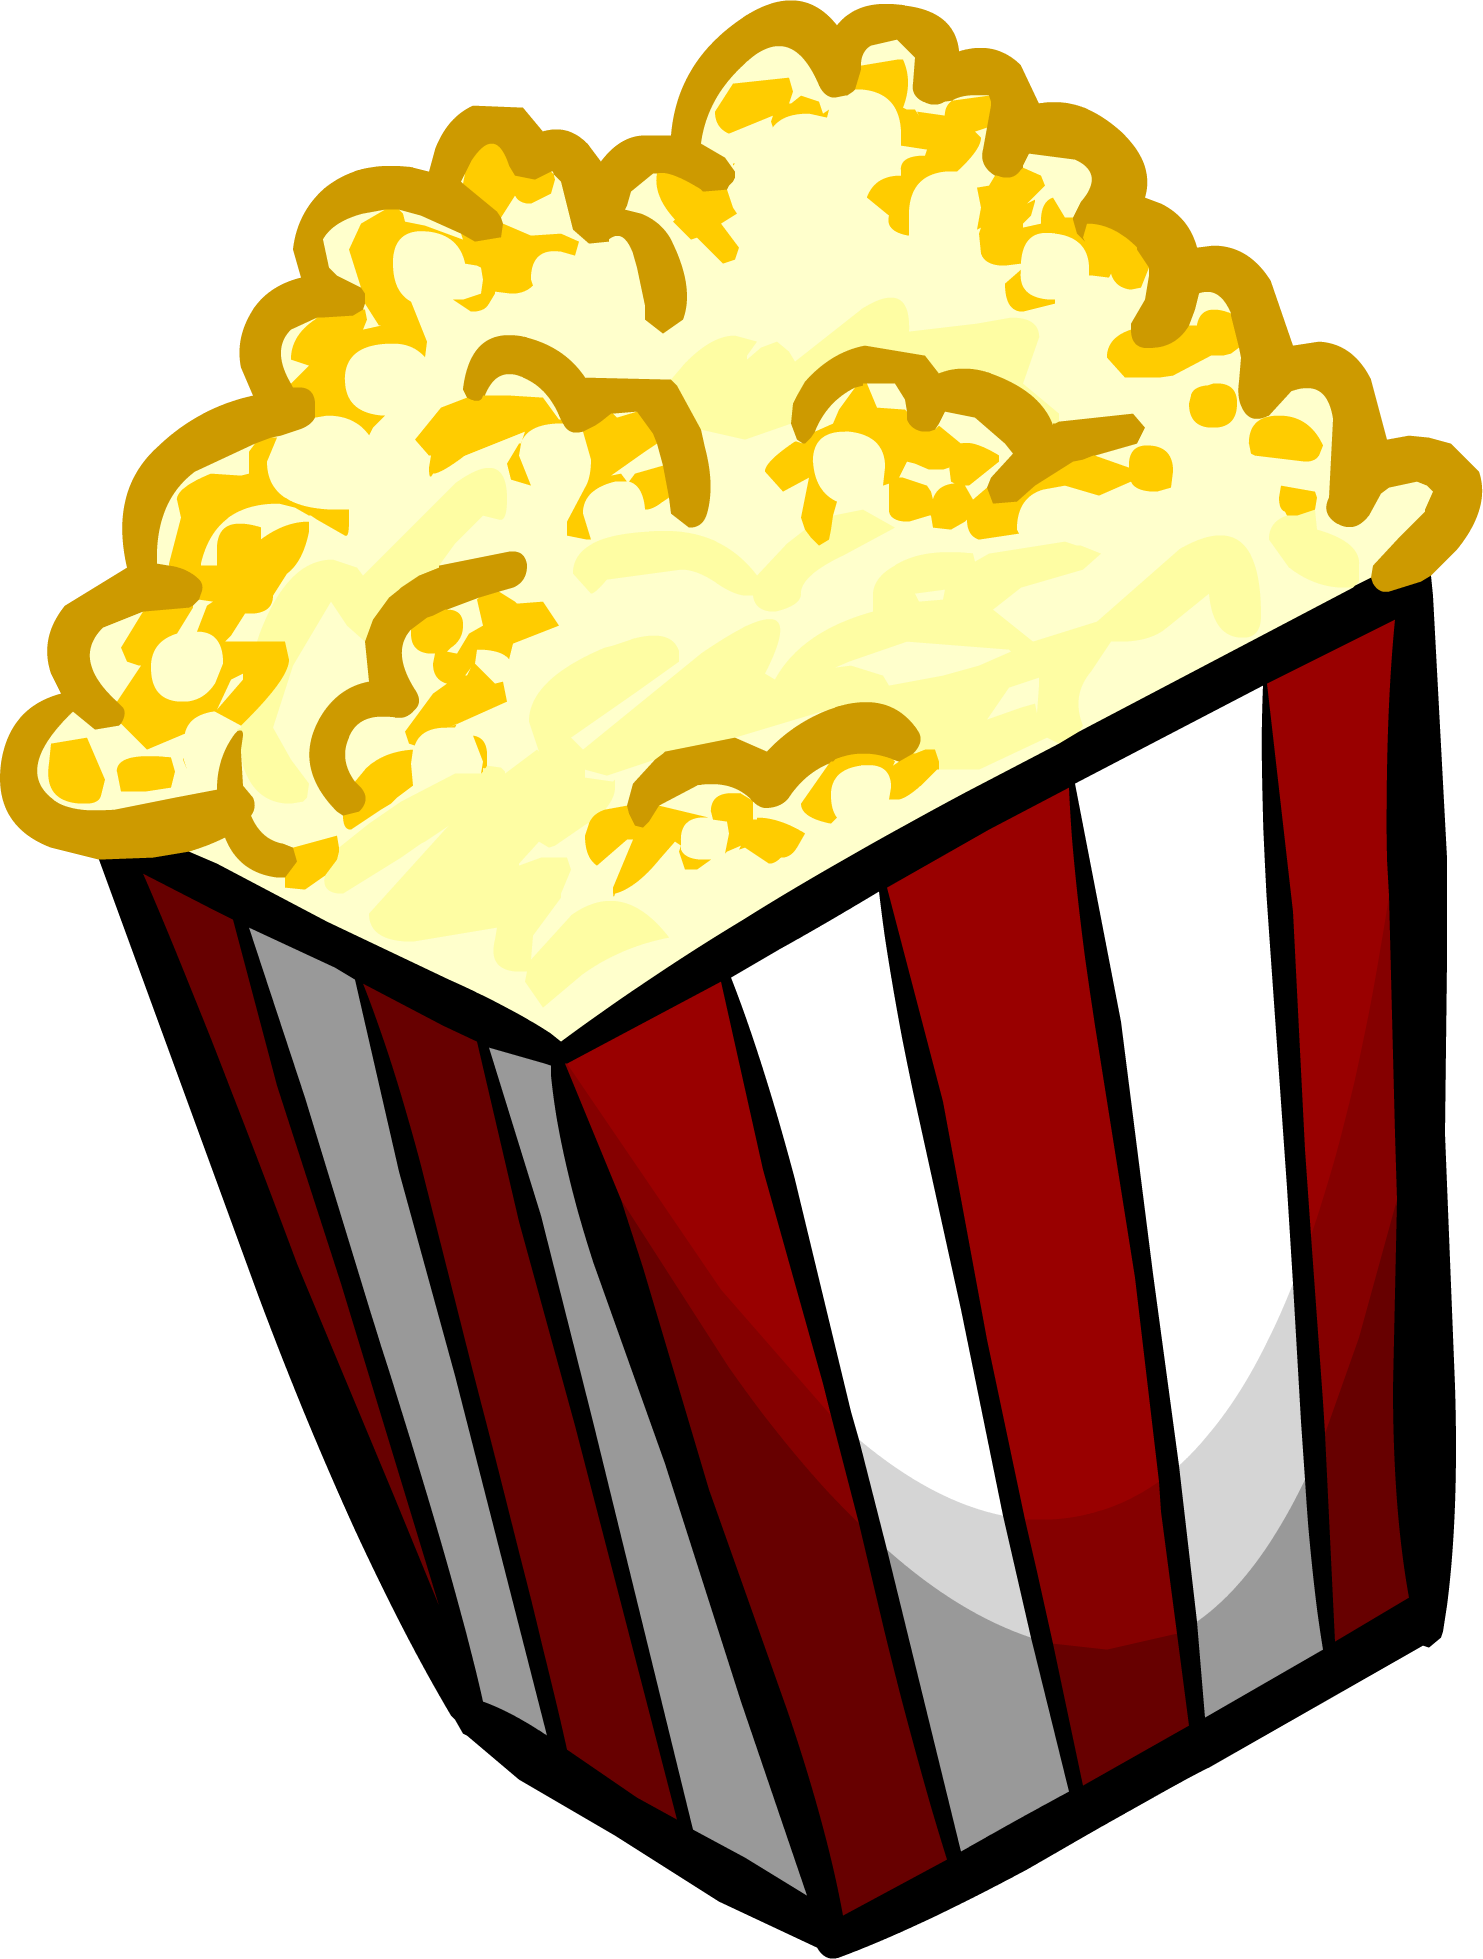 Popcorn Transparent Image PNG Image